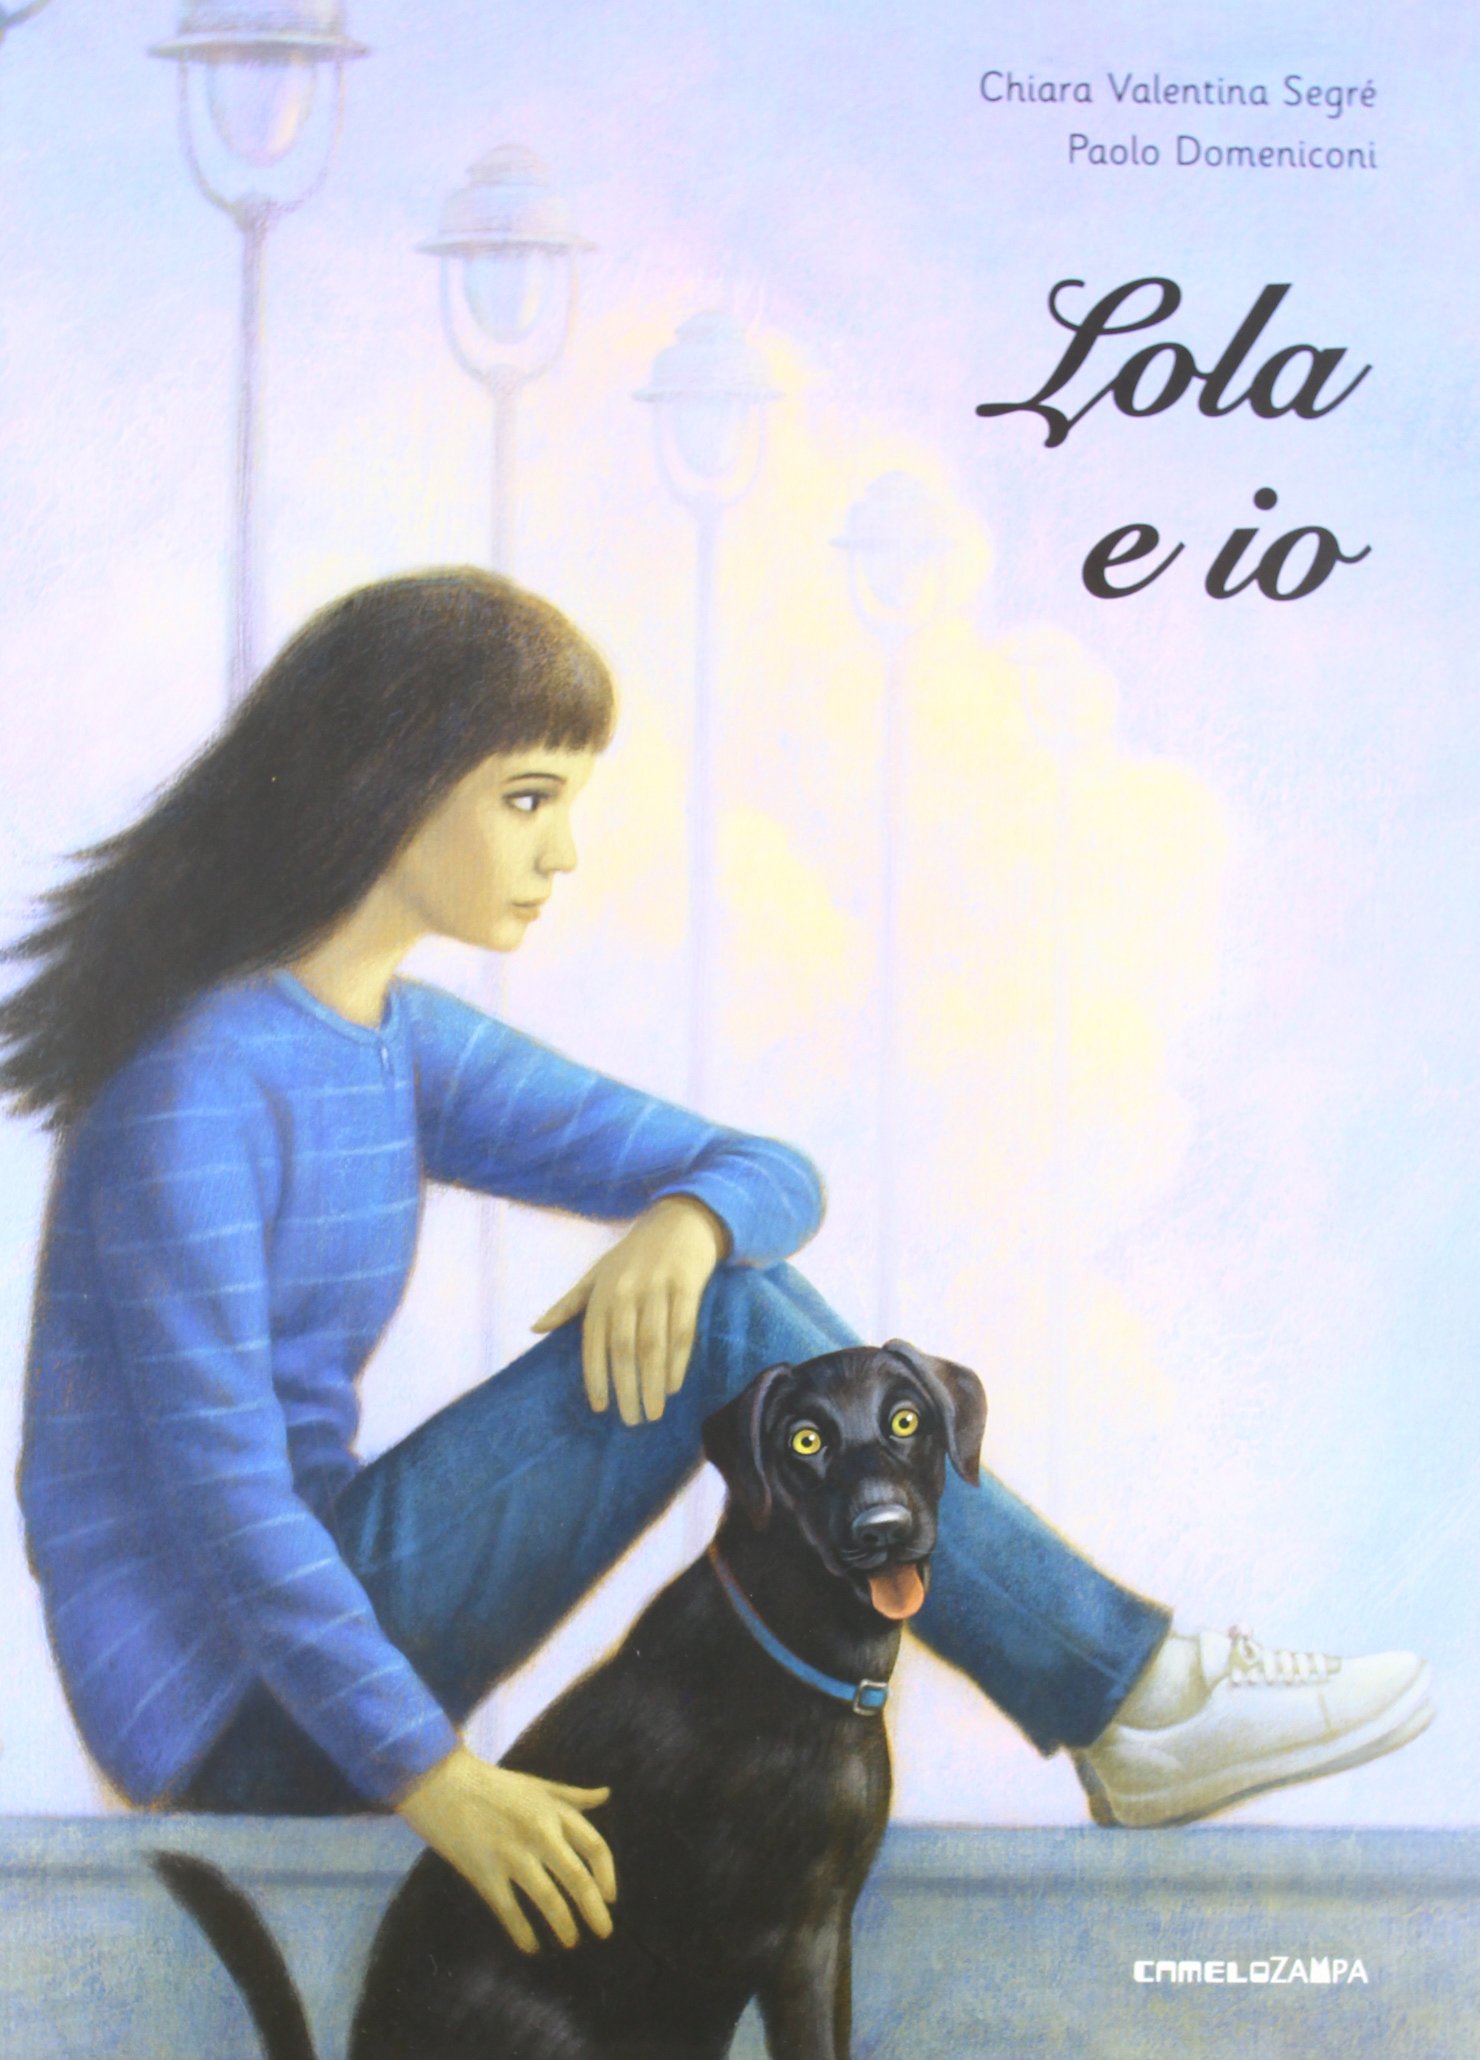 Lola e io – Chiara Valentina Segrè e Paolo Domeniconi